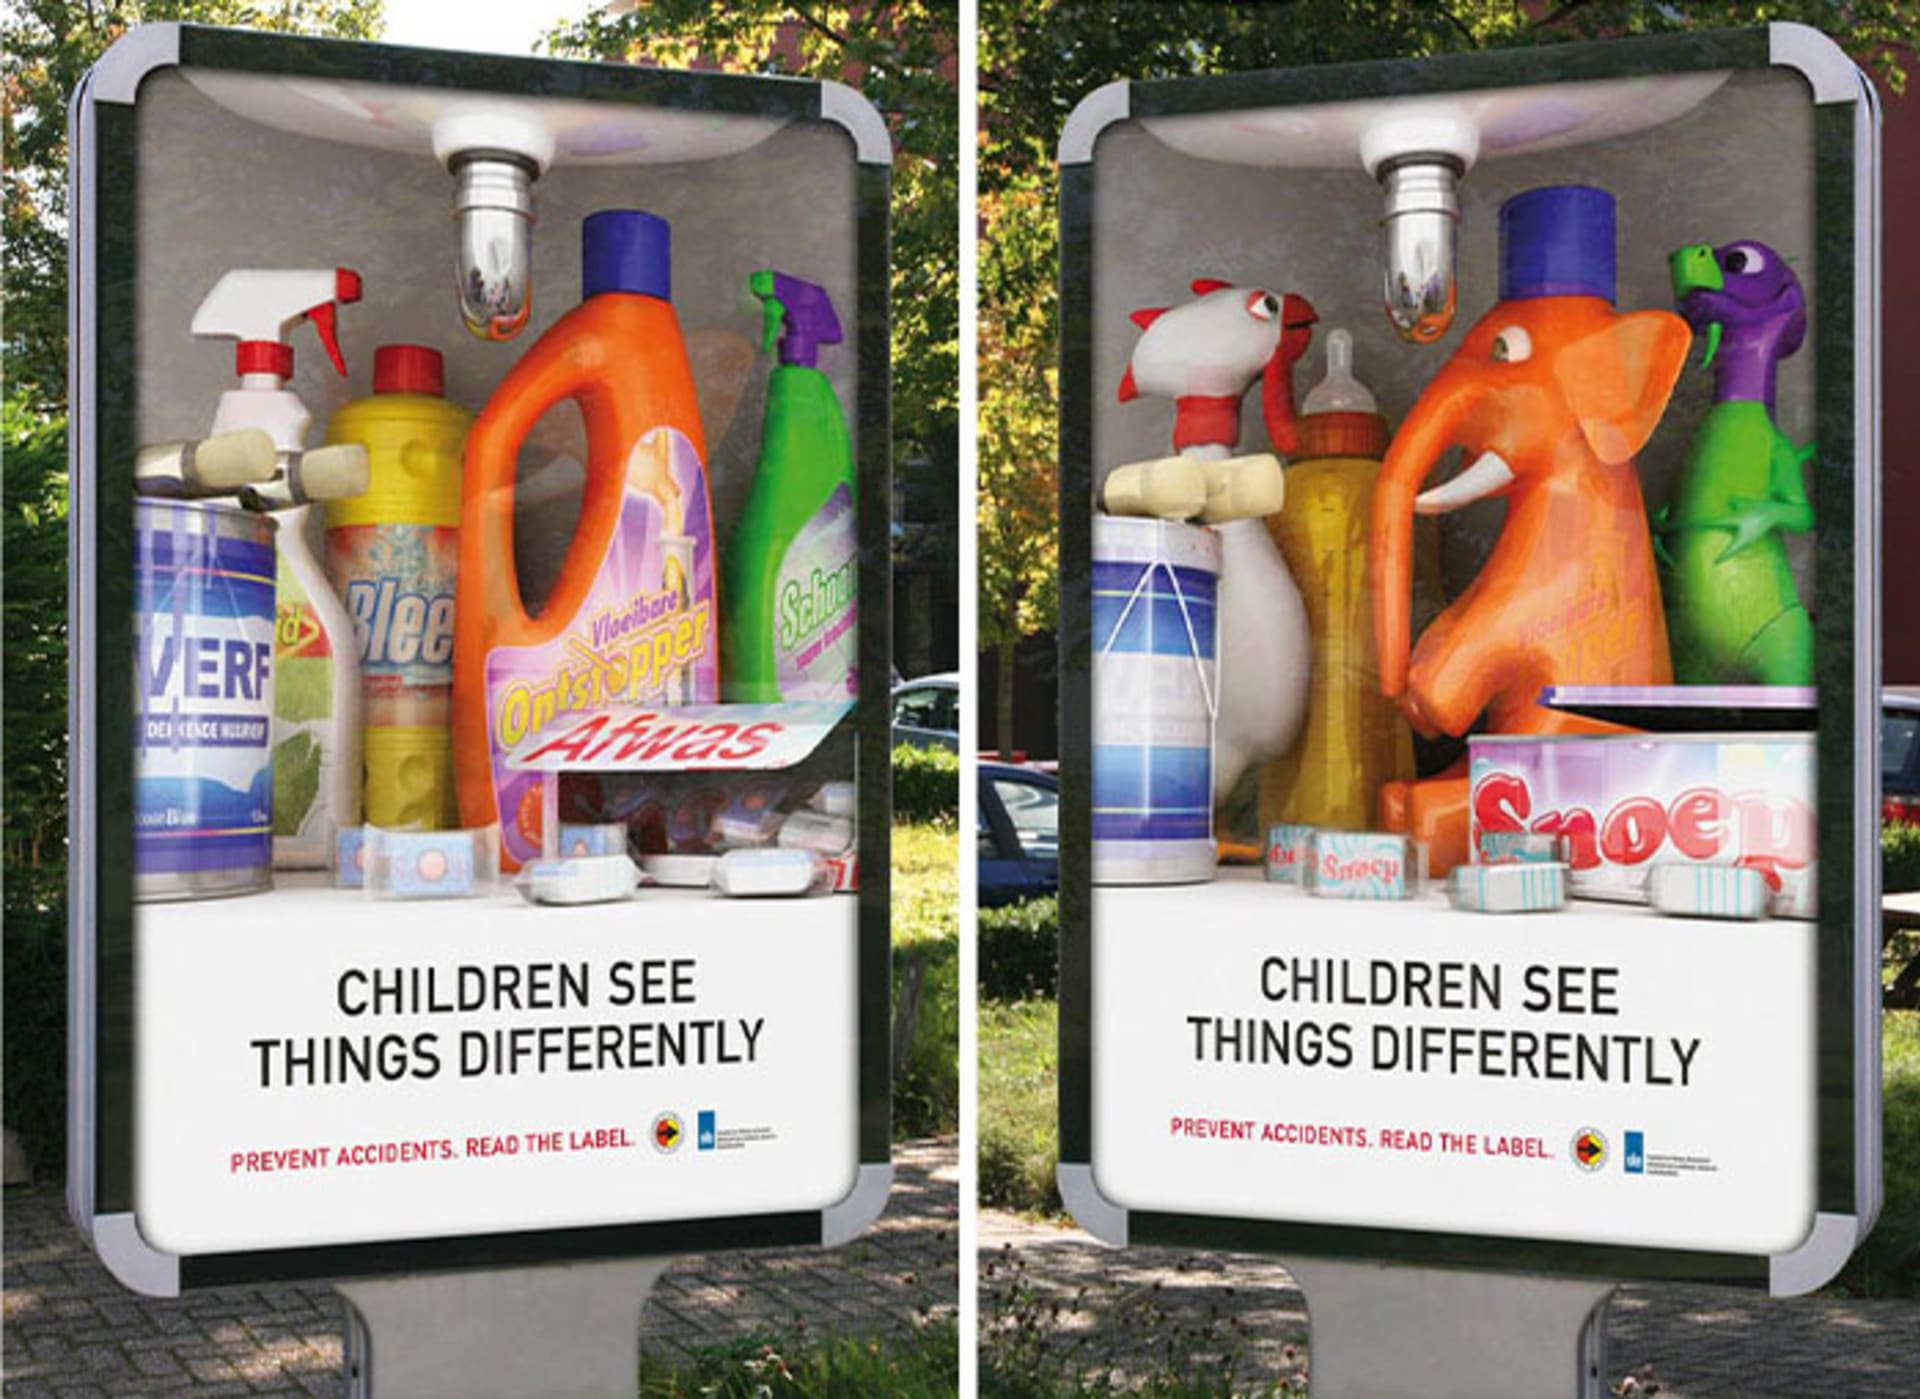 "Děti vnímají věci jinak."